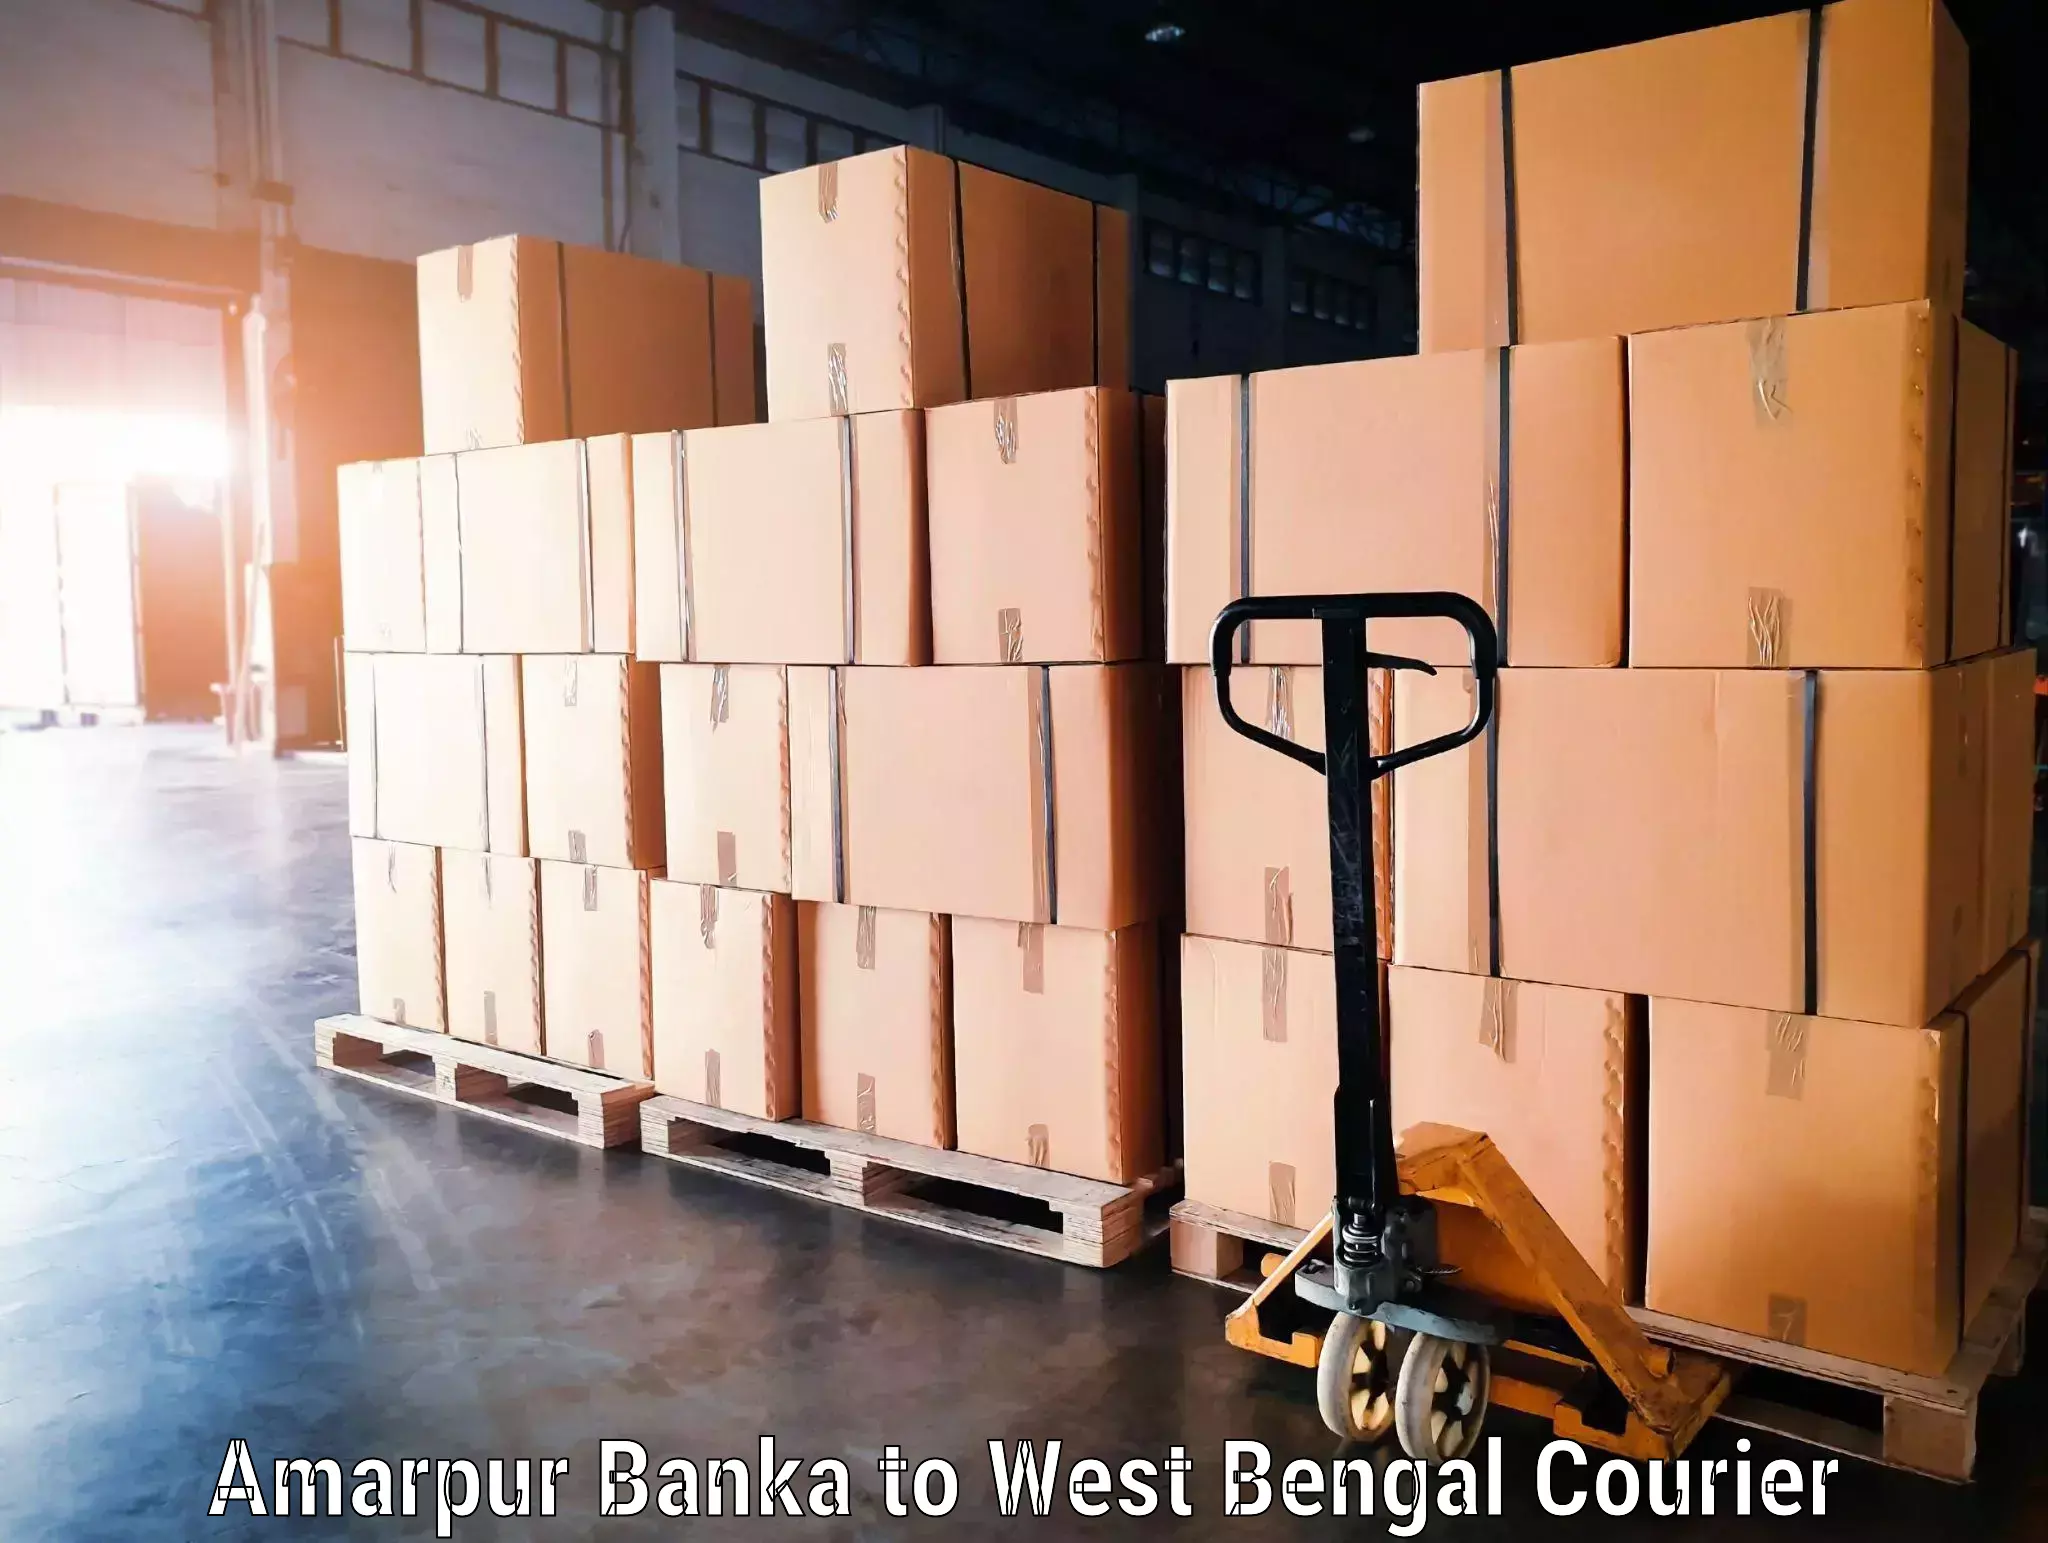 Baggage shipping schedule Amarpur Banka to Maynaguri